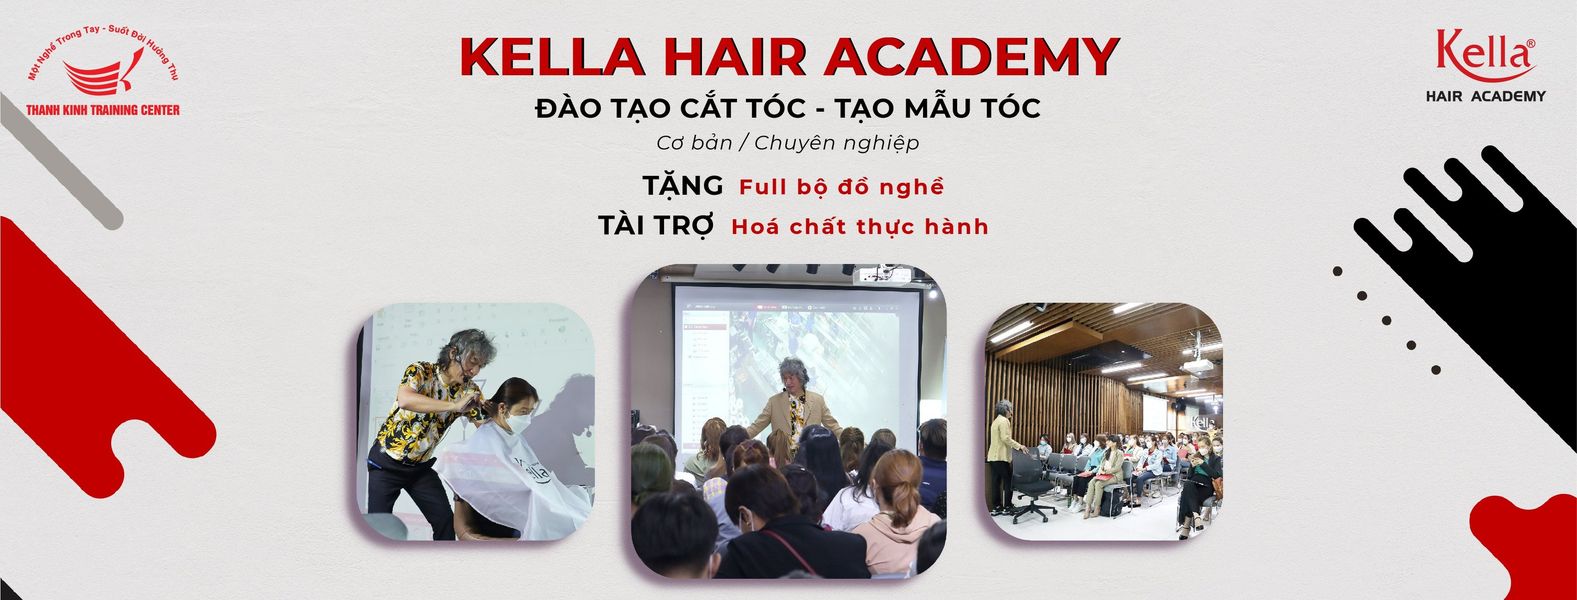 Trung tâm dạy nghề thẩm mỹ Thanh Kinh